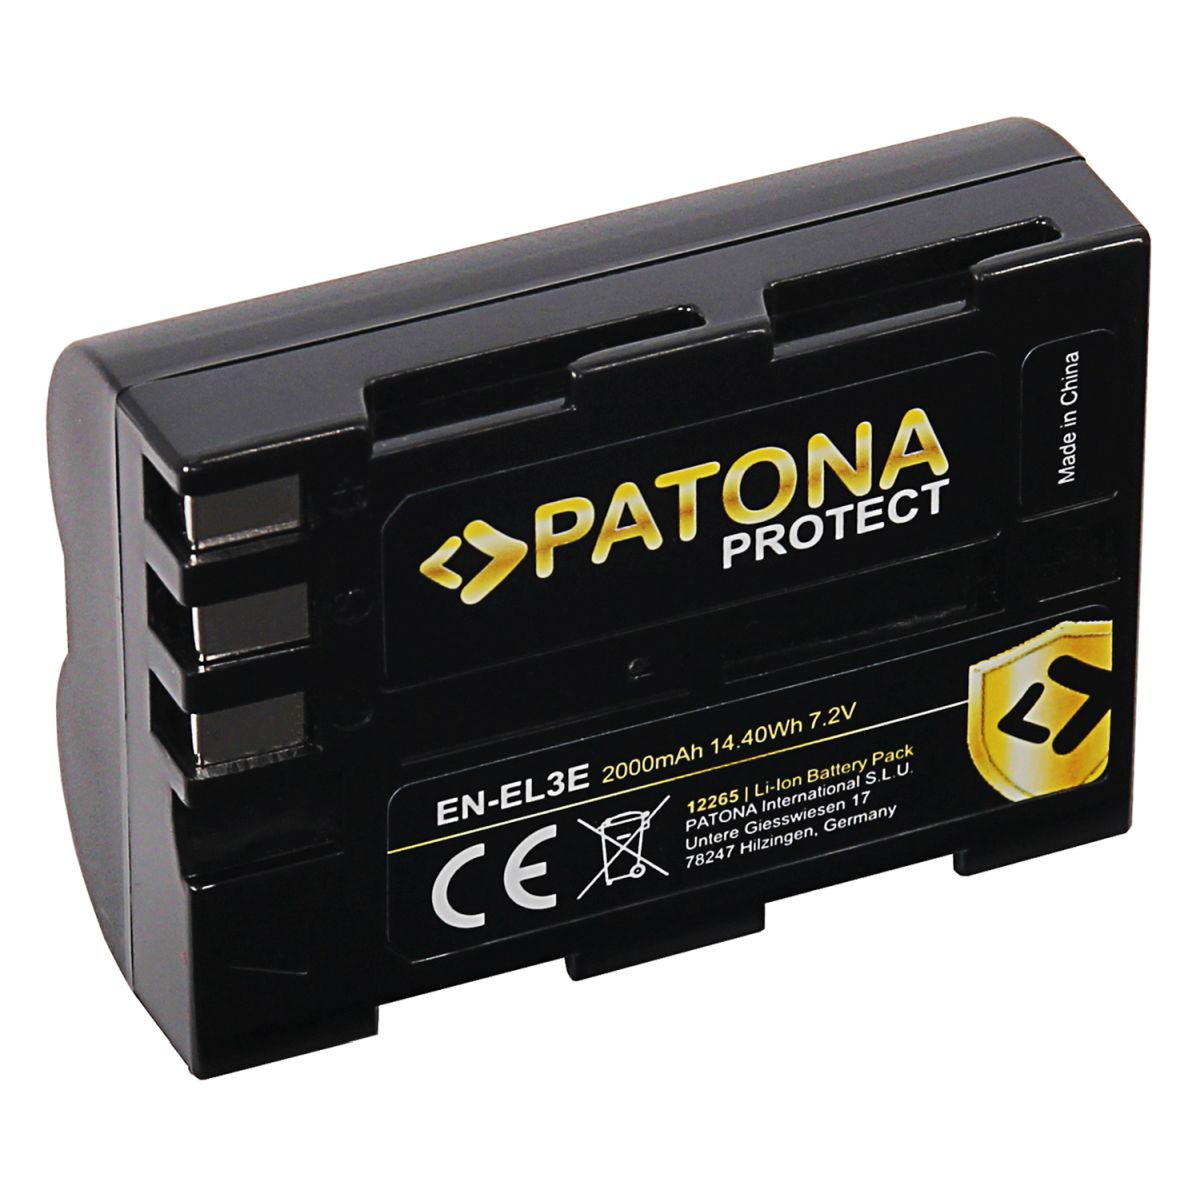 Patona Protect Akku Nikon EN-EL3E